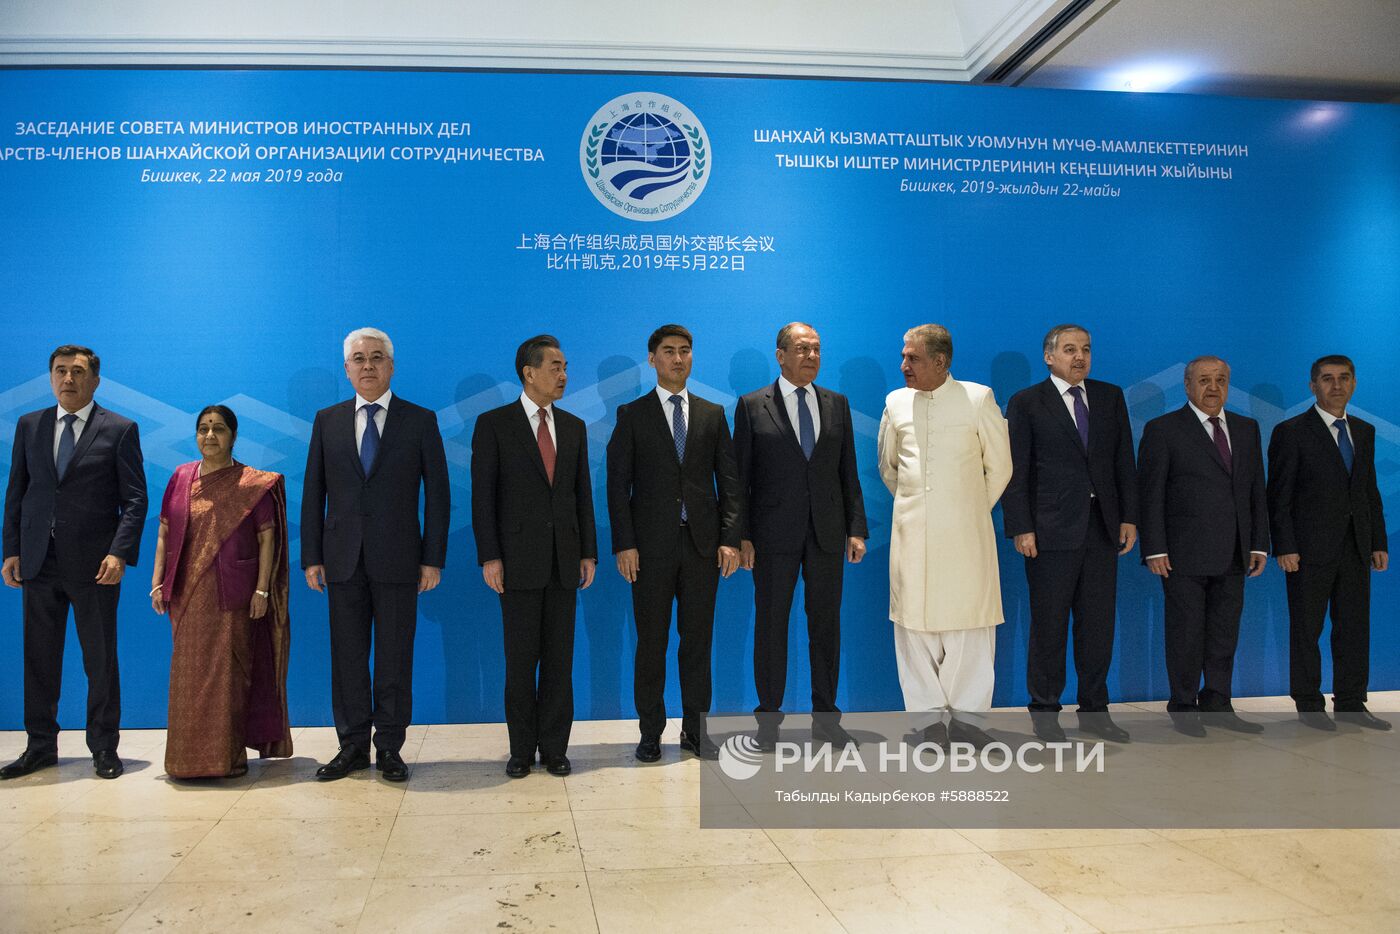 Совещание министров иностранных дел ШОС в Бишкеке